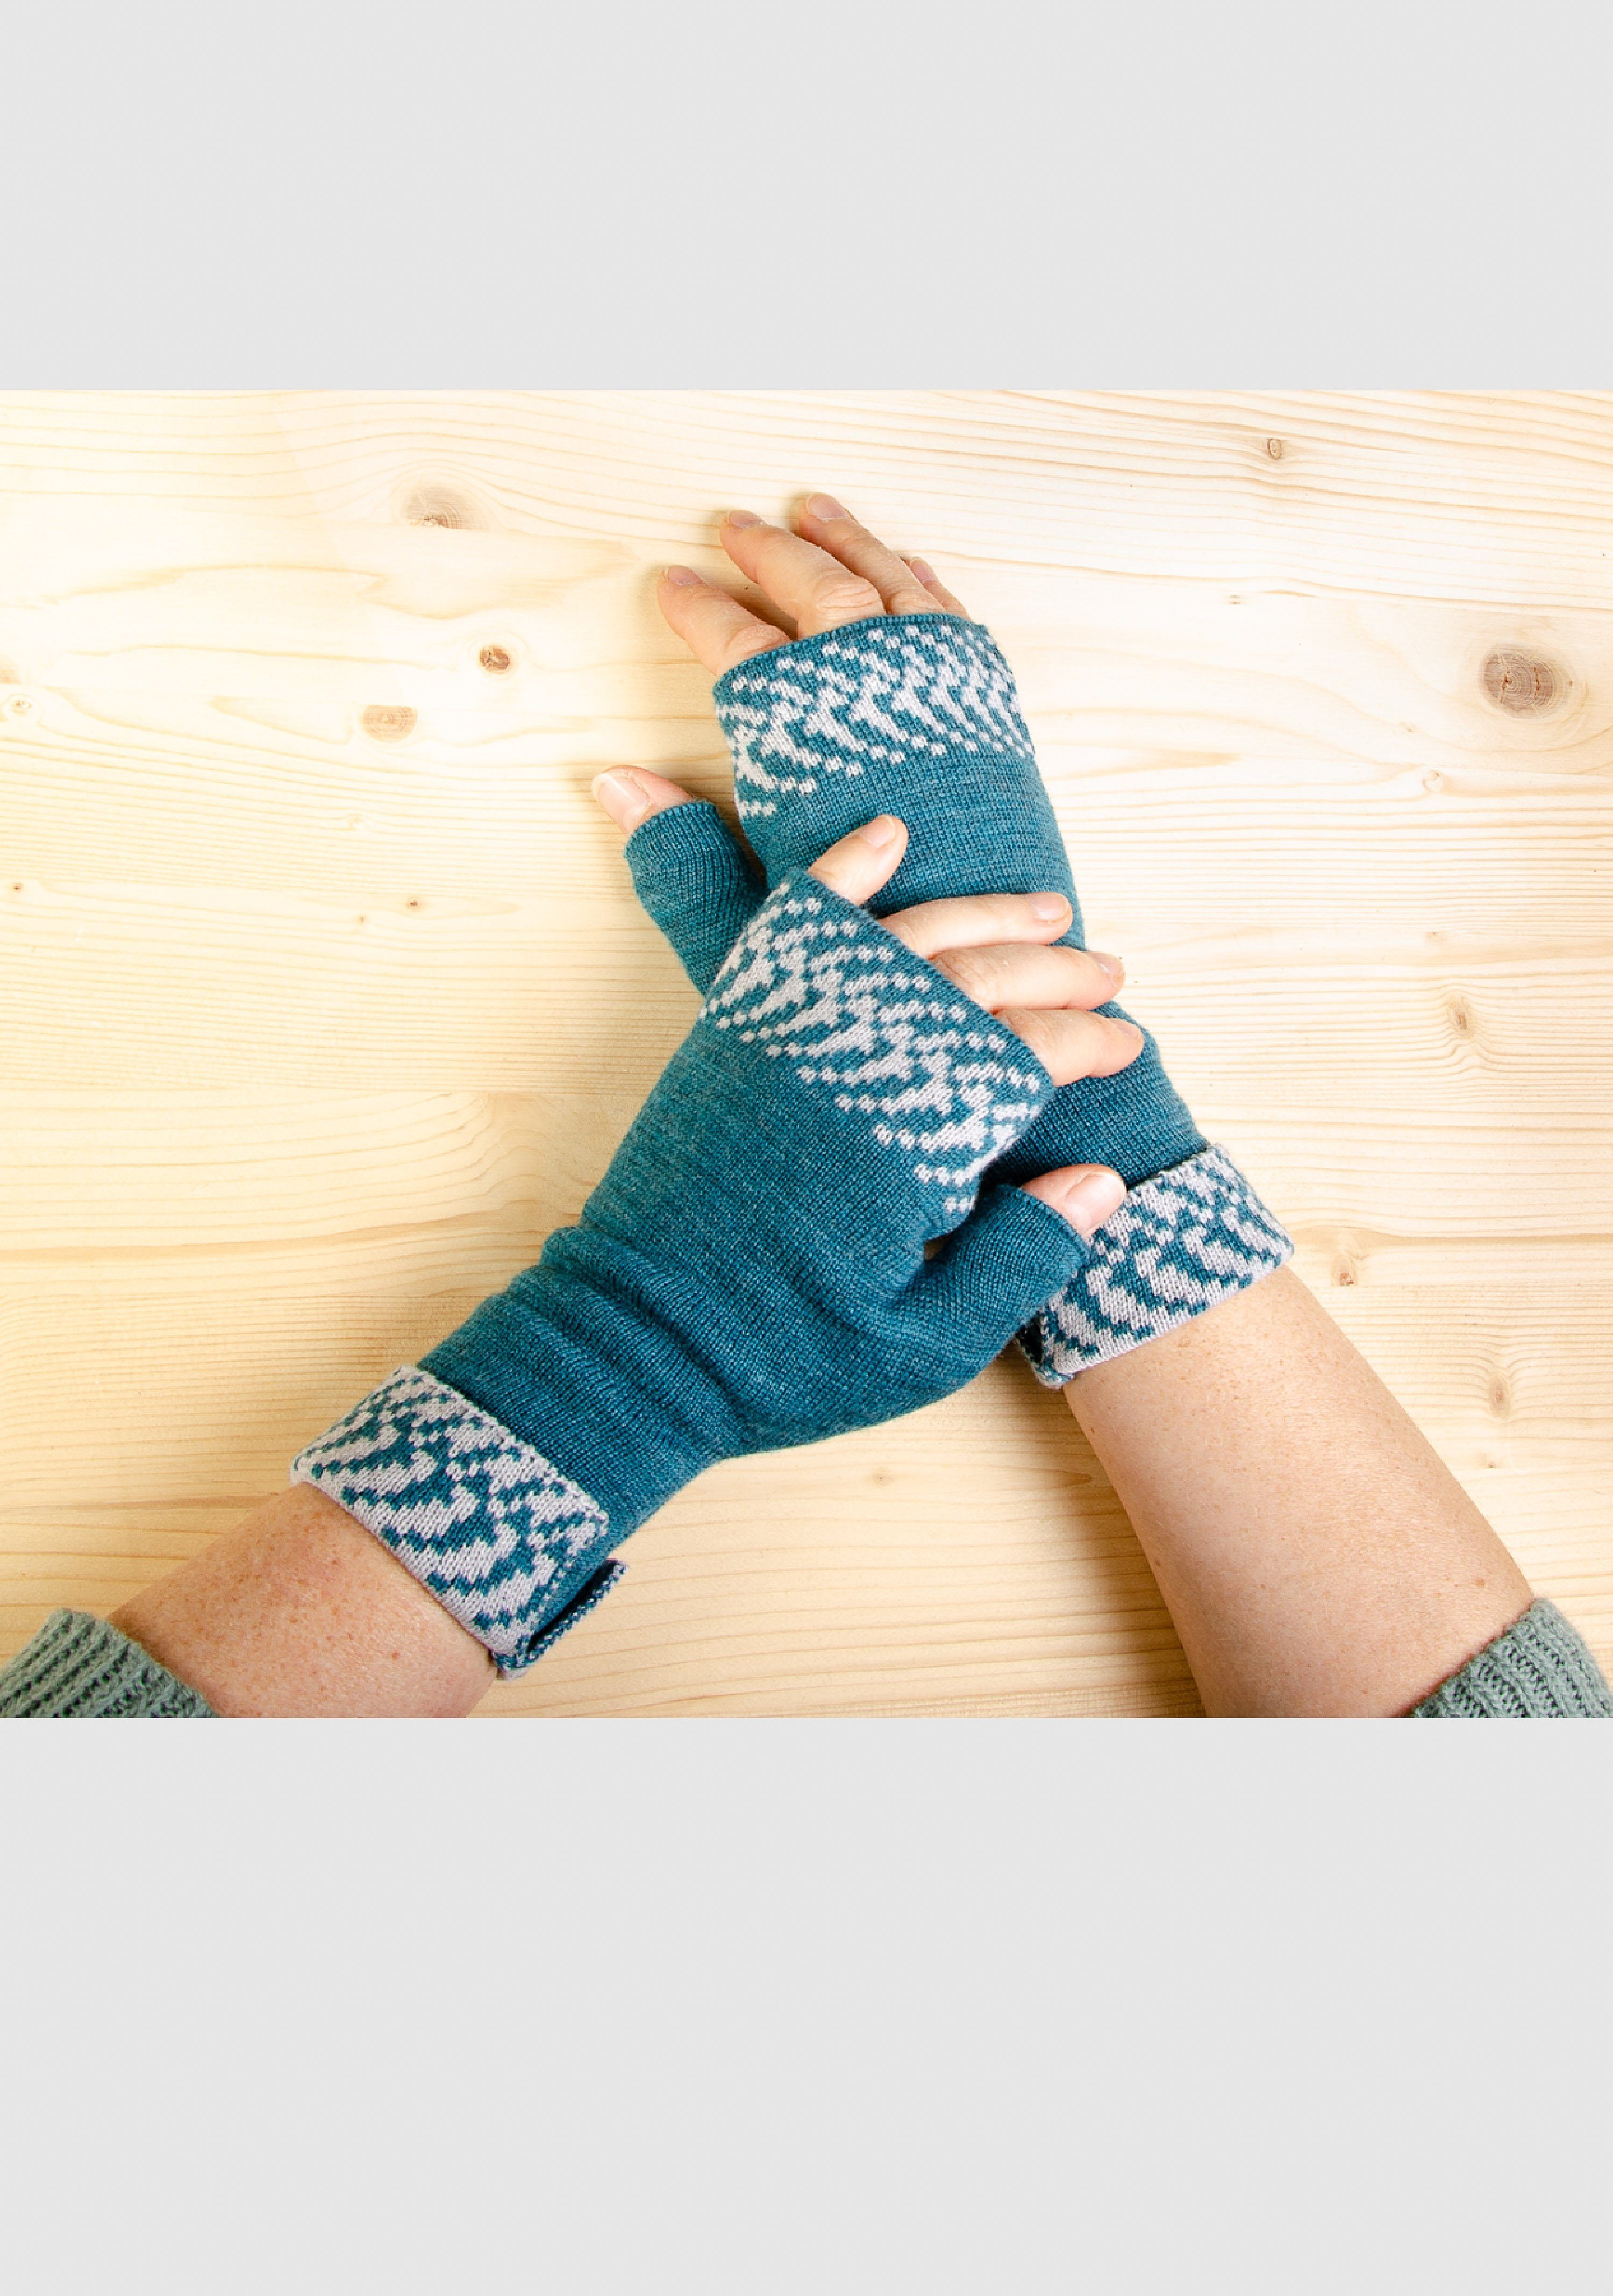 LANARTO slow fashion Strickhandschuhe Merino Handwärmer Pixel in vielen Farben aus 100% Merino extrasoft tiefsee_silber